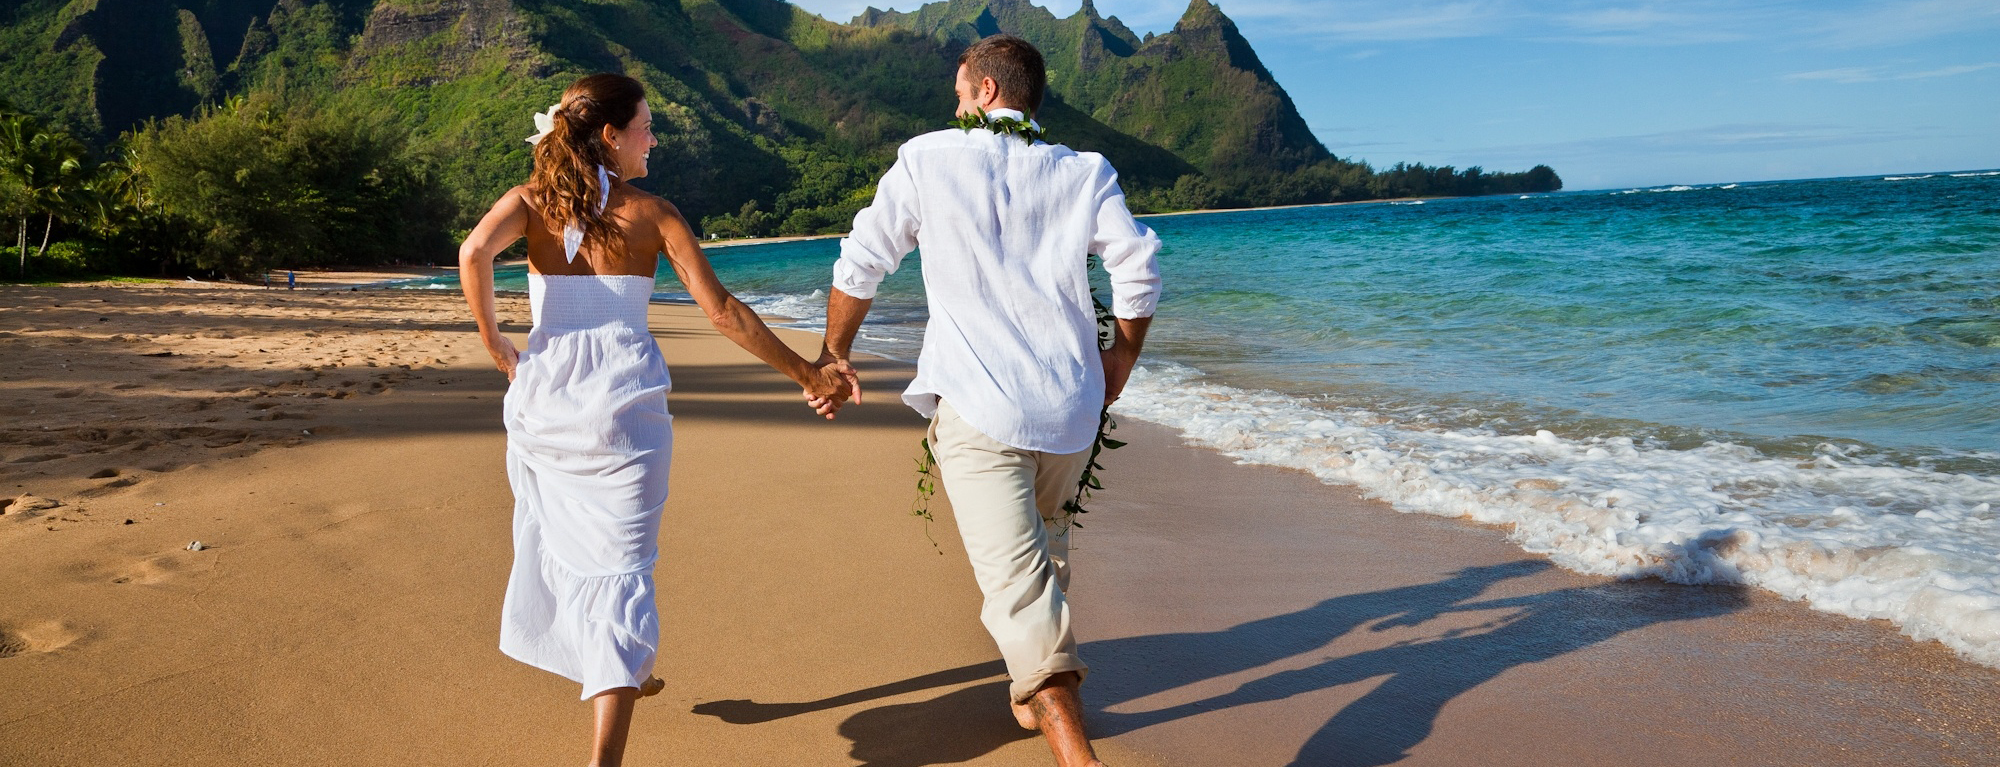 美国夏威夷人间天堂6天·一个连空气都浪漫的地方